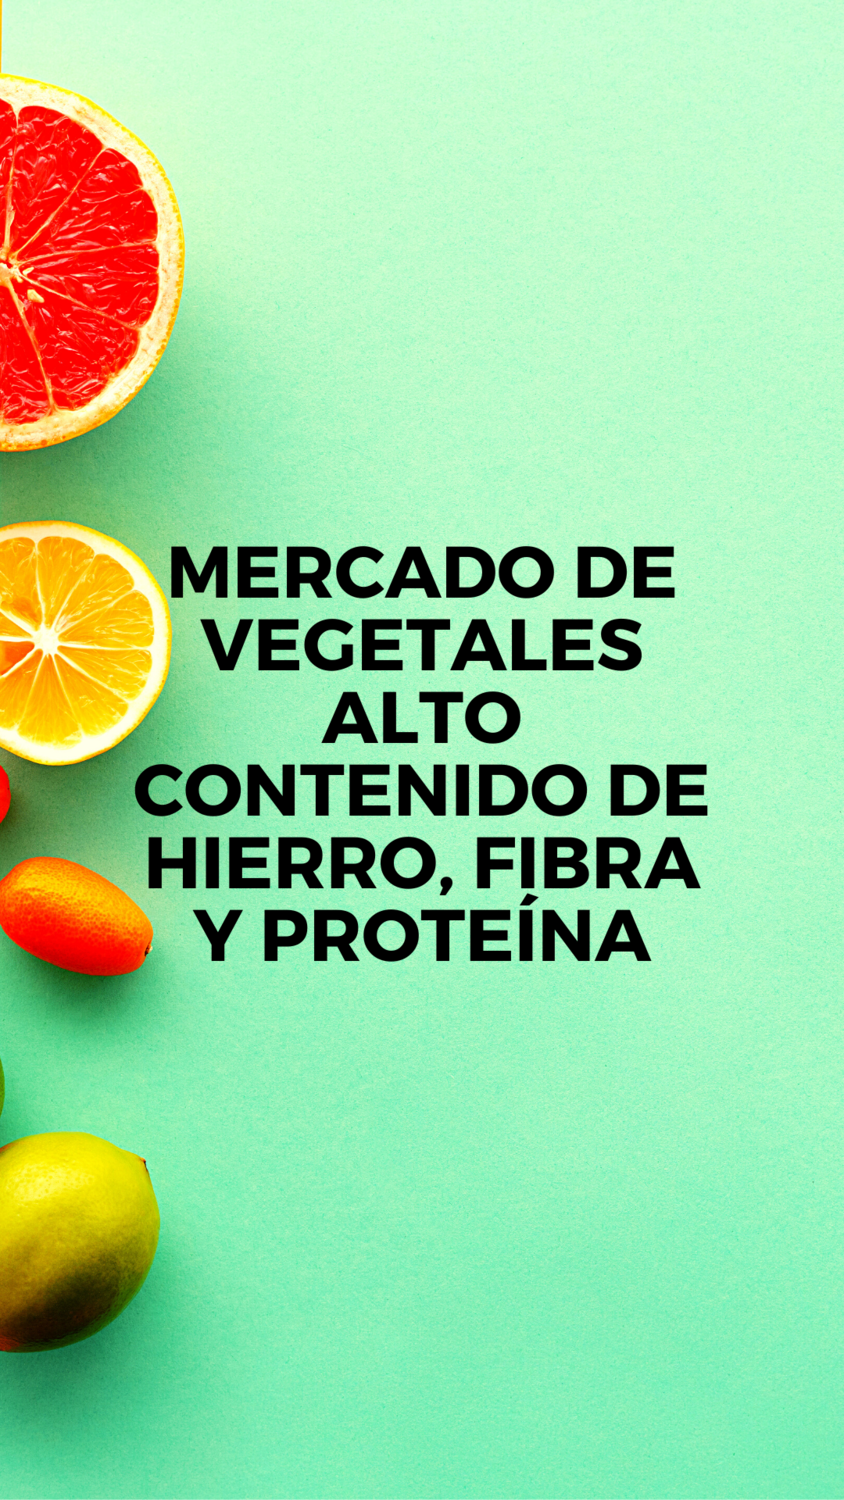 Mercado de Vegetales con alto contenido de Hierro, Fibra y Proteína